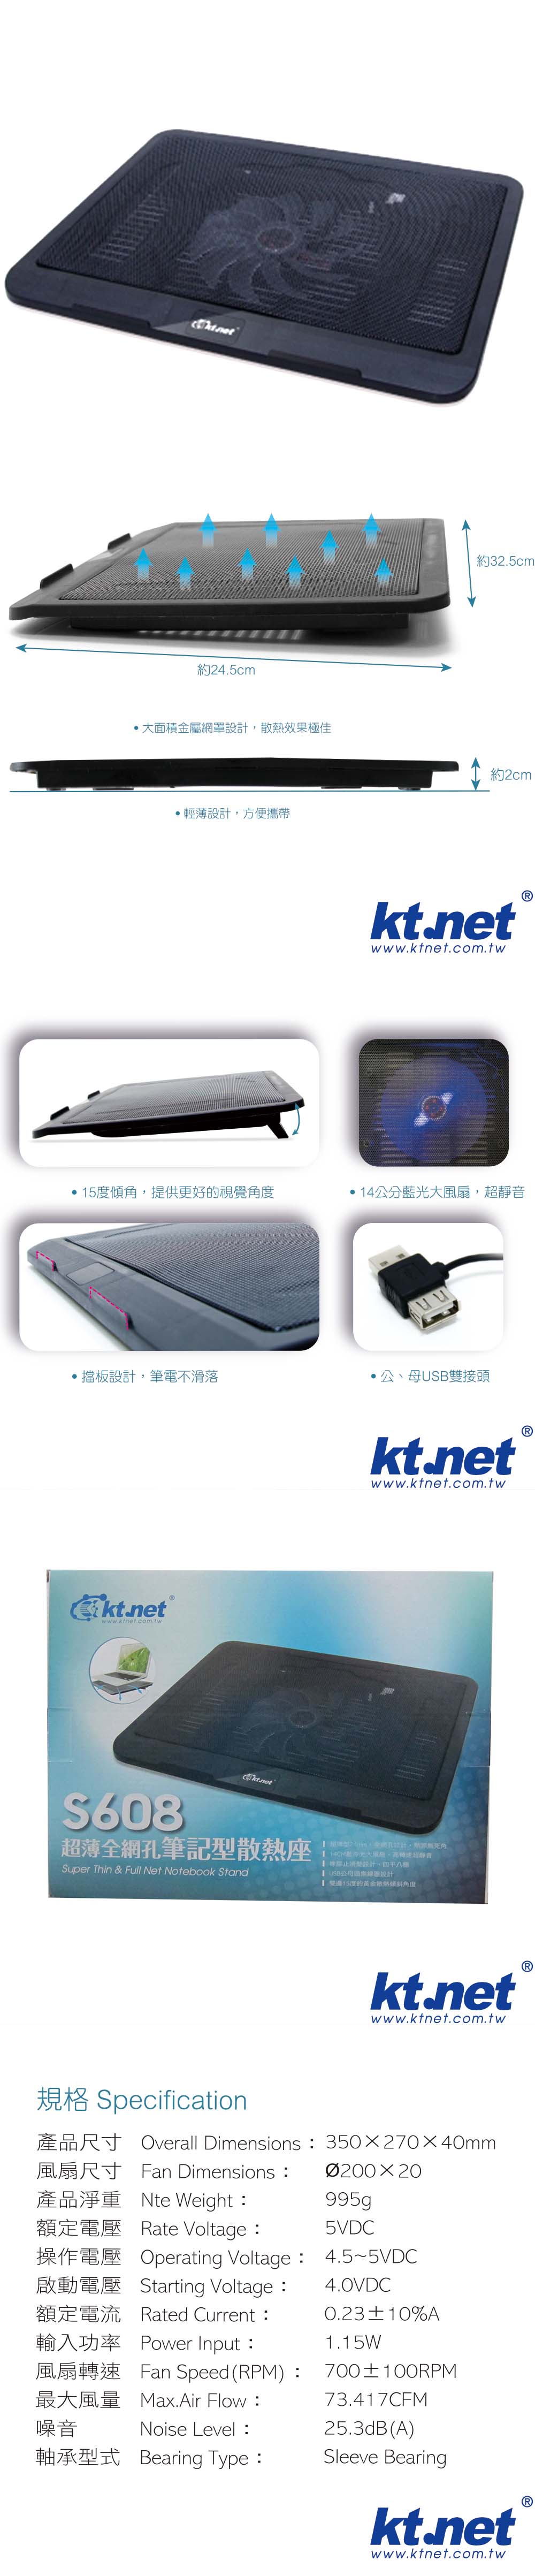 靜音 USB USB kt.net 攜帶 USB